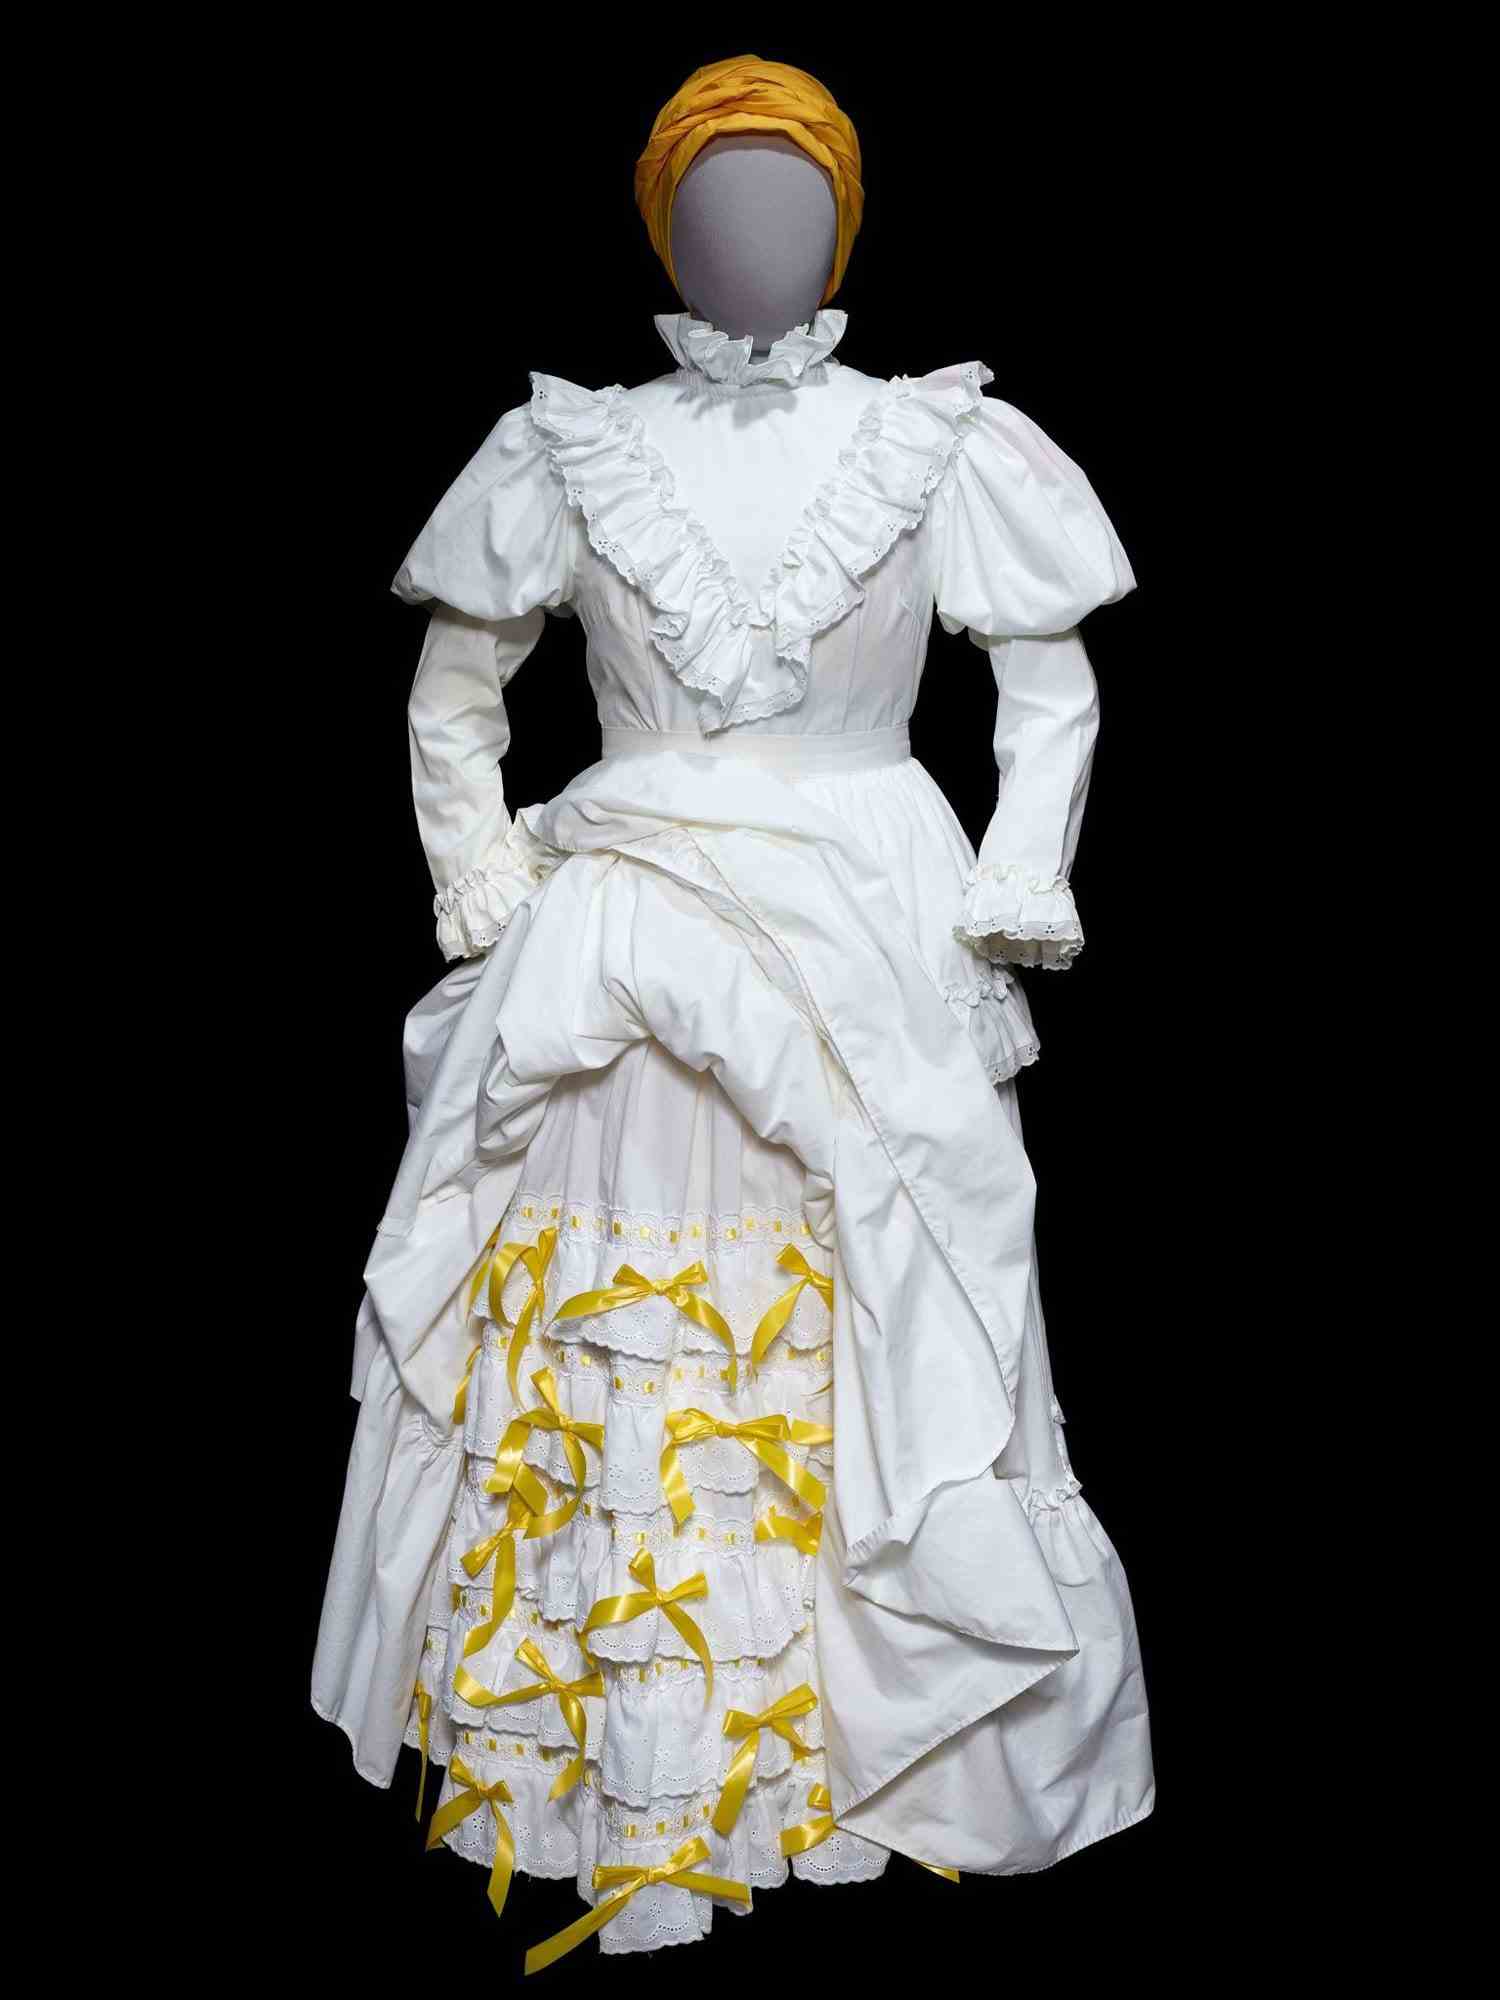 Weißes Kleid mit Rüschen und gelben Details mit gelbem Hut auf Mannequin.